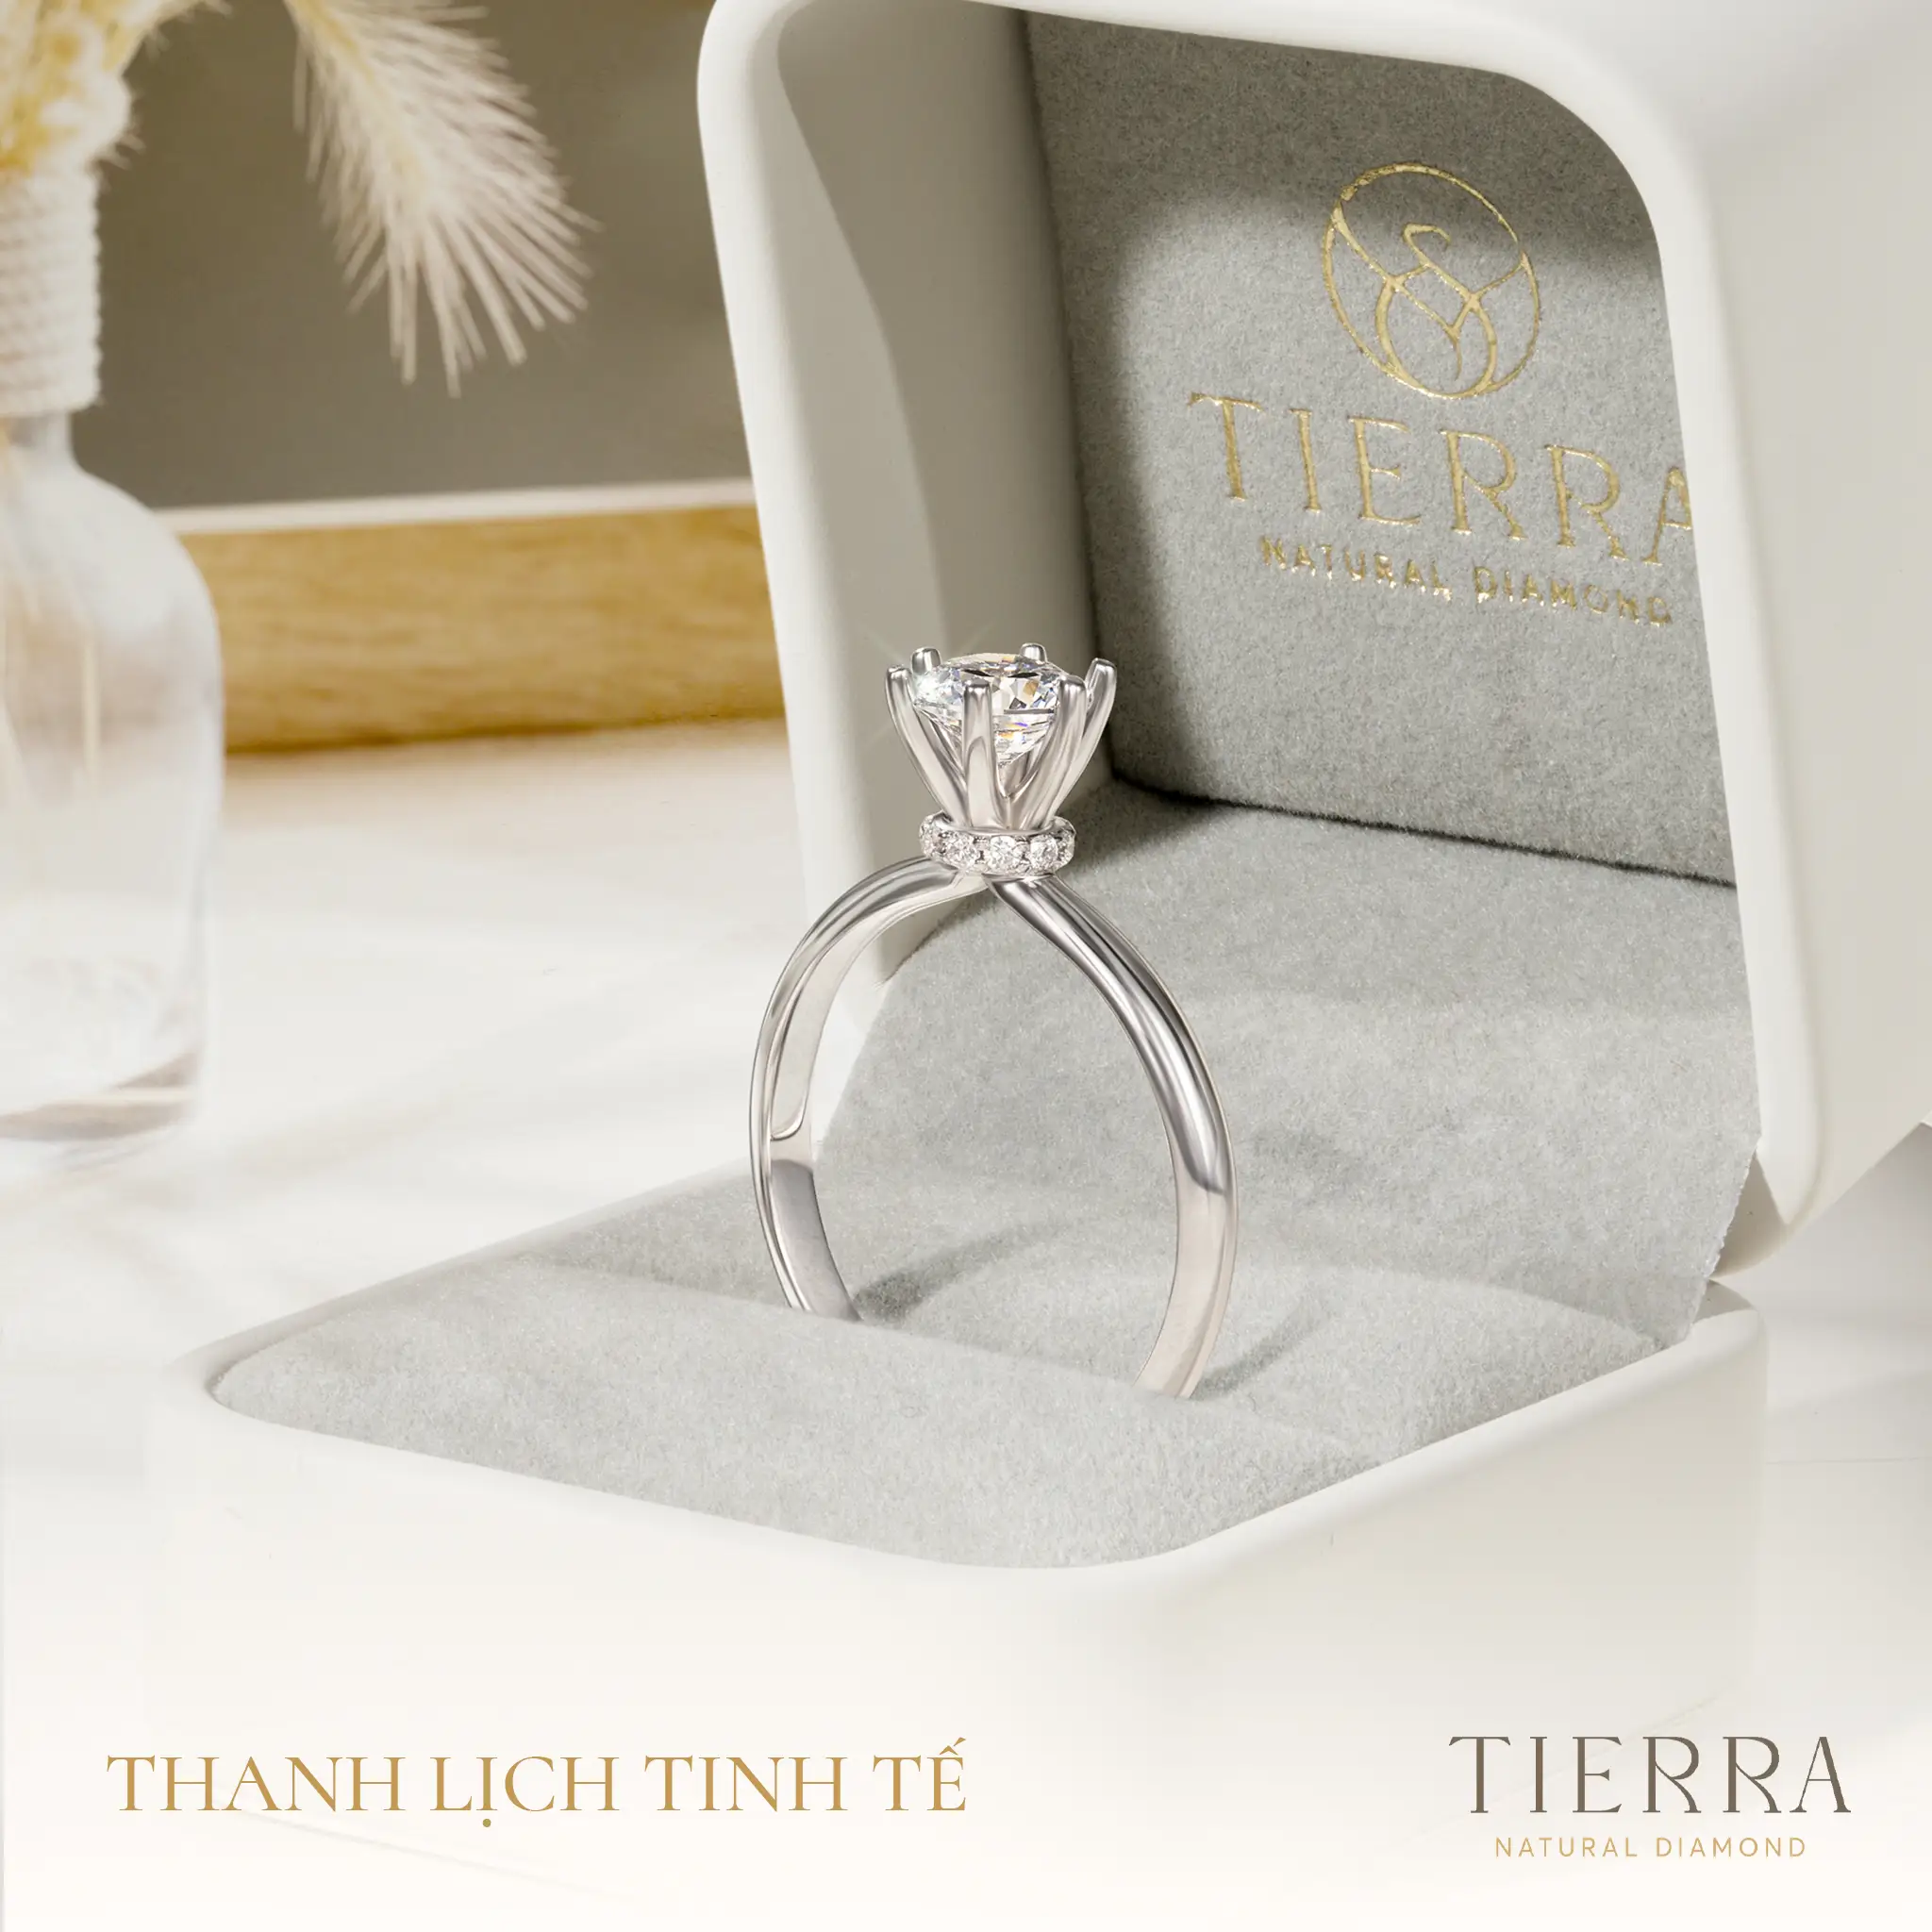 Tierra Diamond - Khám phá địa chỉ mua nhẫn cưới, nhẫn cầu hôn được cặp đôi trẻ ưa chuộng - Hình 2